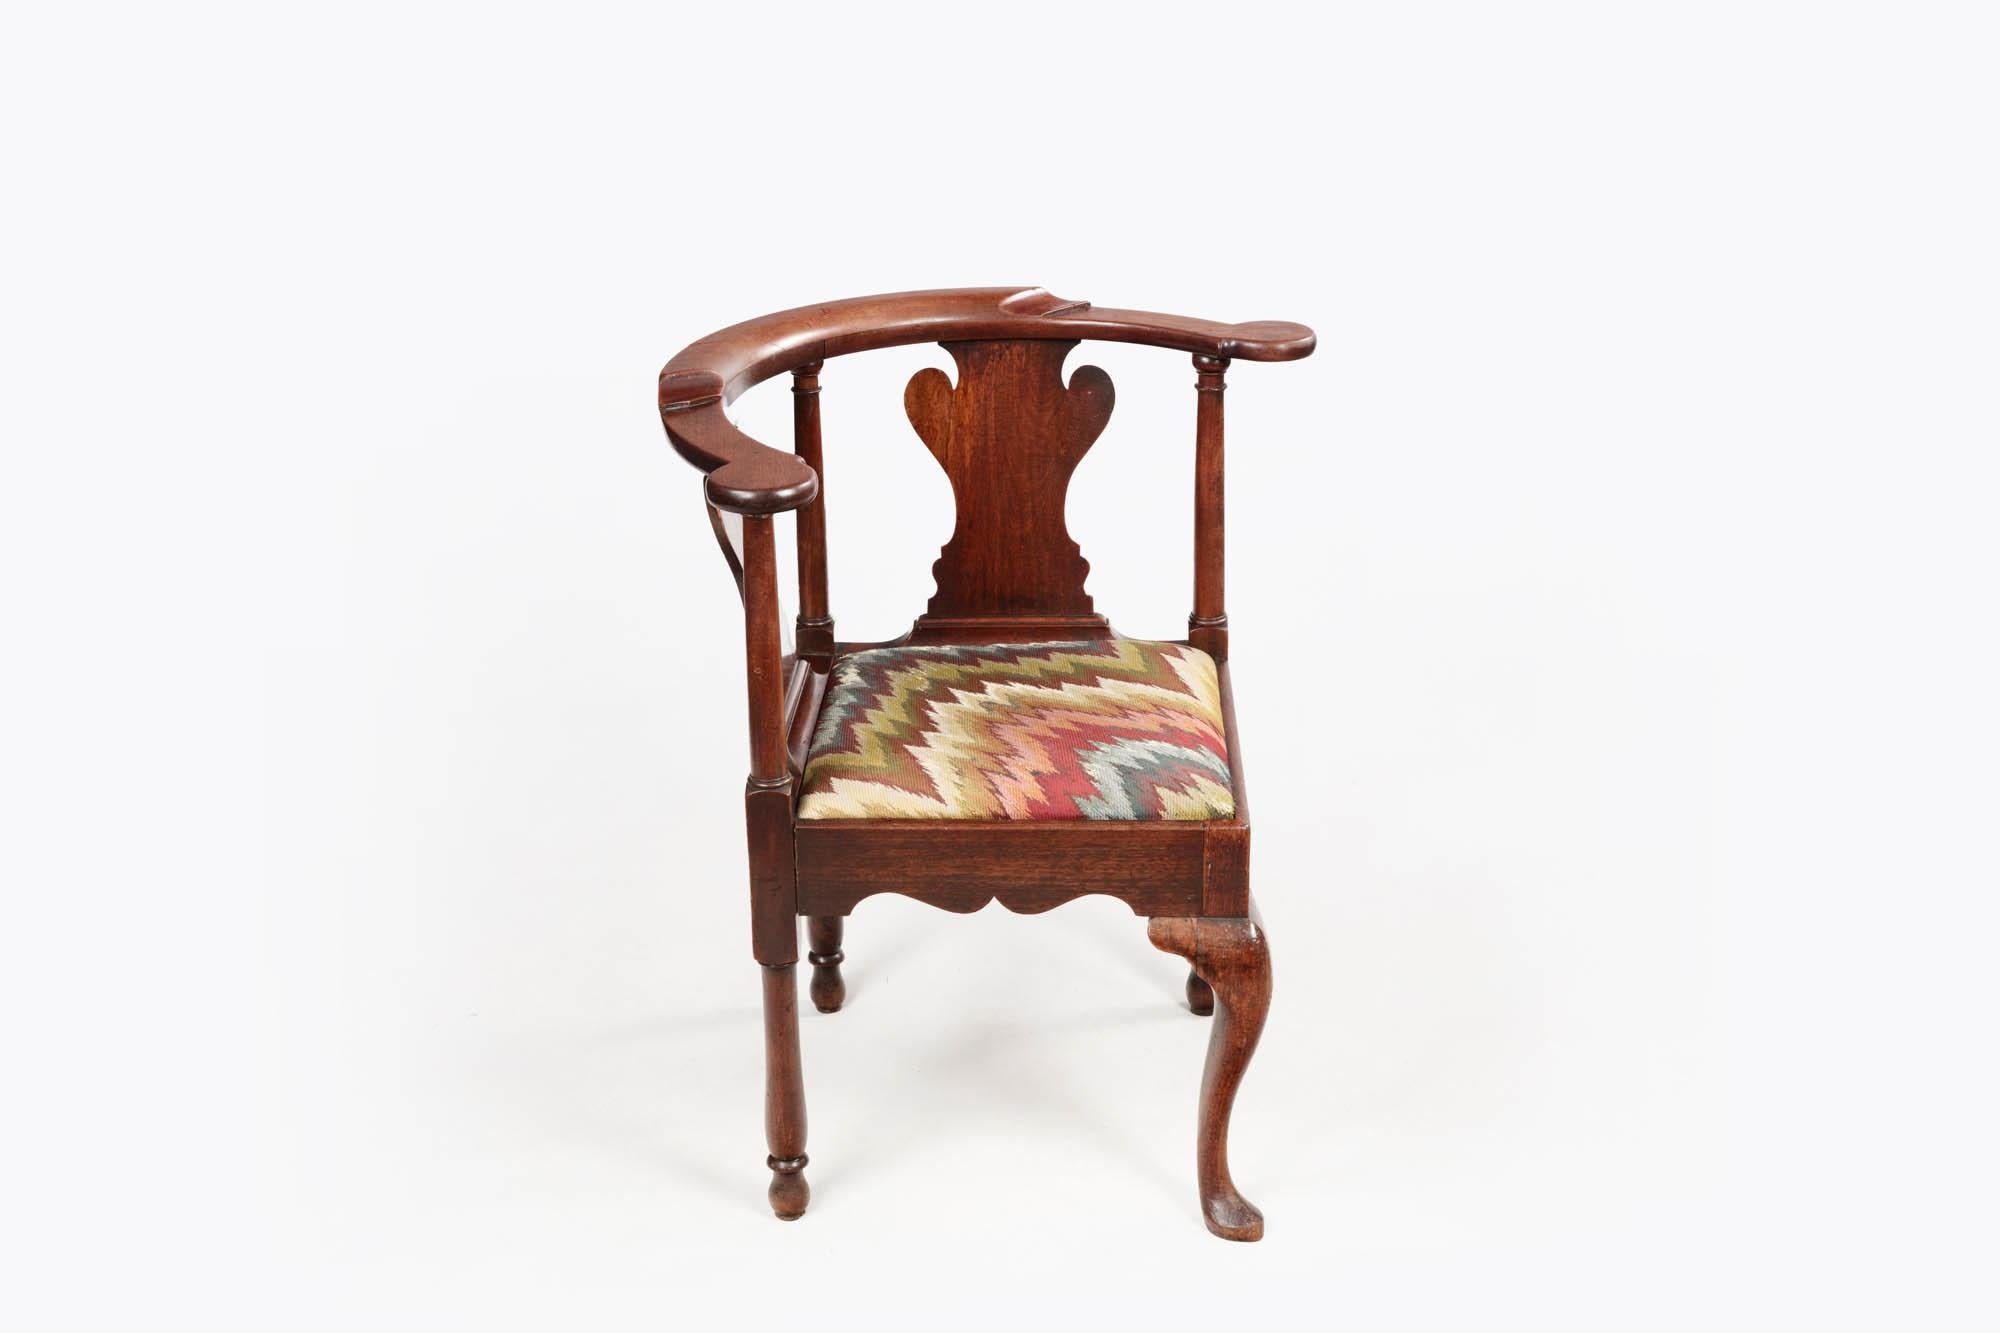 chaise d'angle en acajou du XIXe siècle, avec dossier en forme d'urne, assise rembourrée, pieds à trois piliers et pied cabriole avec patte d'appui à l'avant.